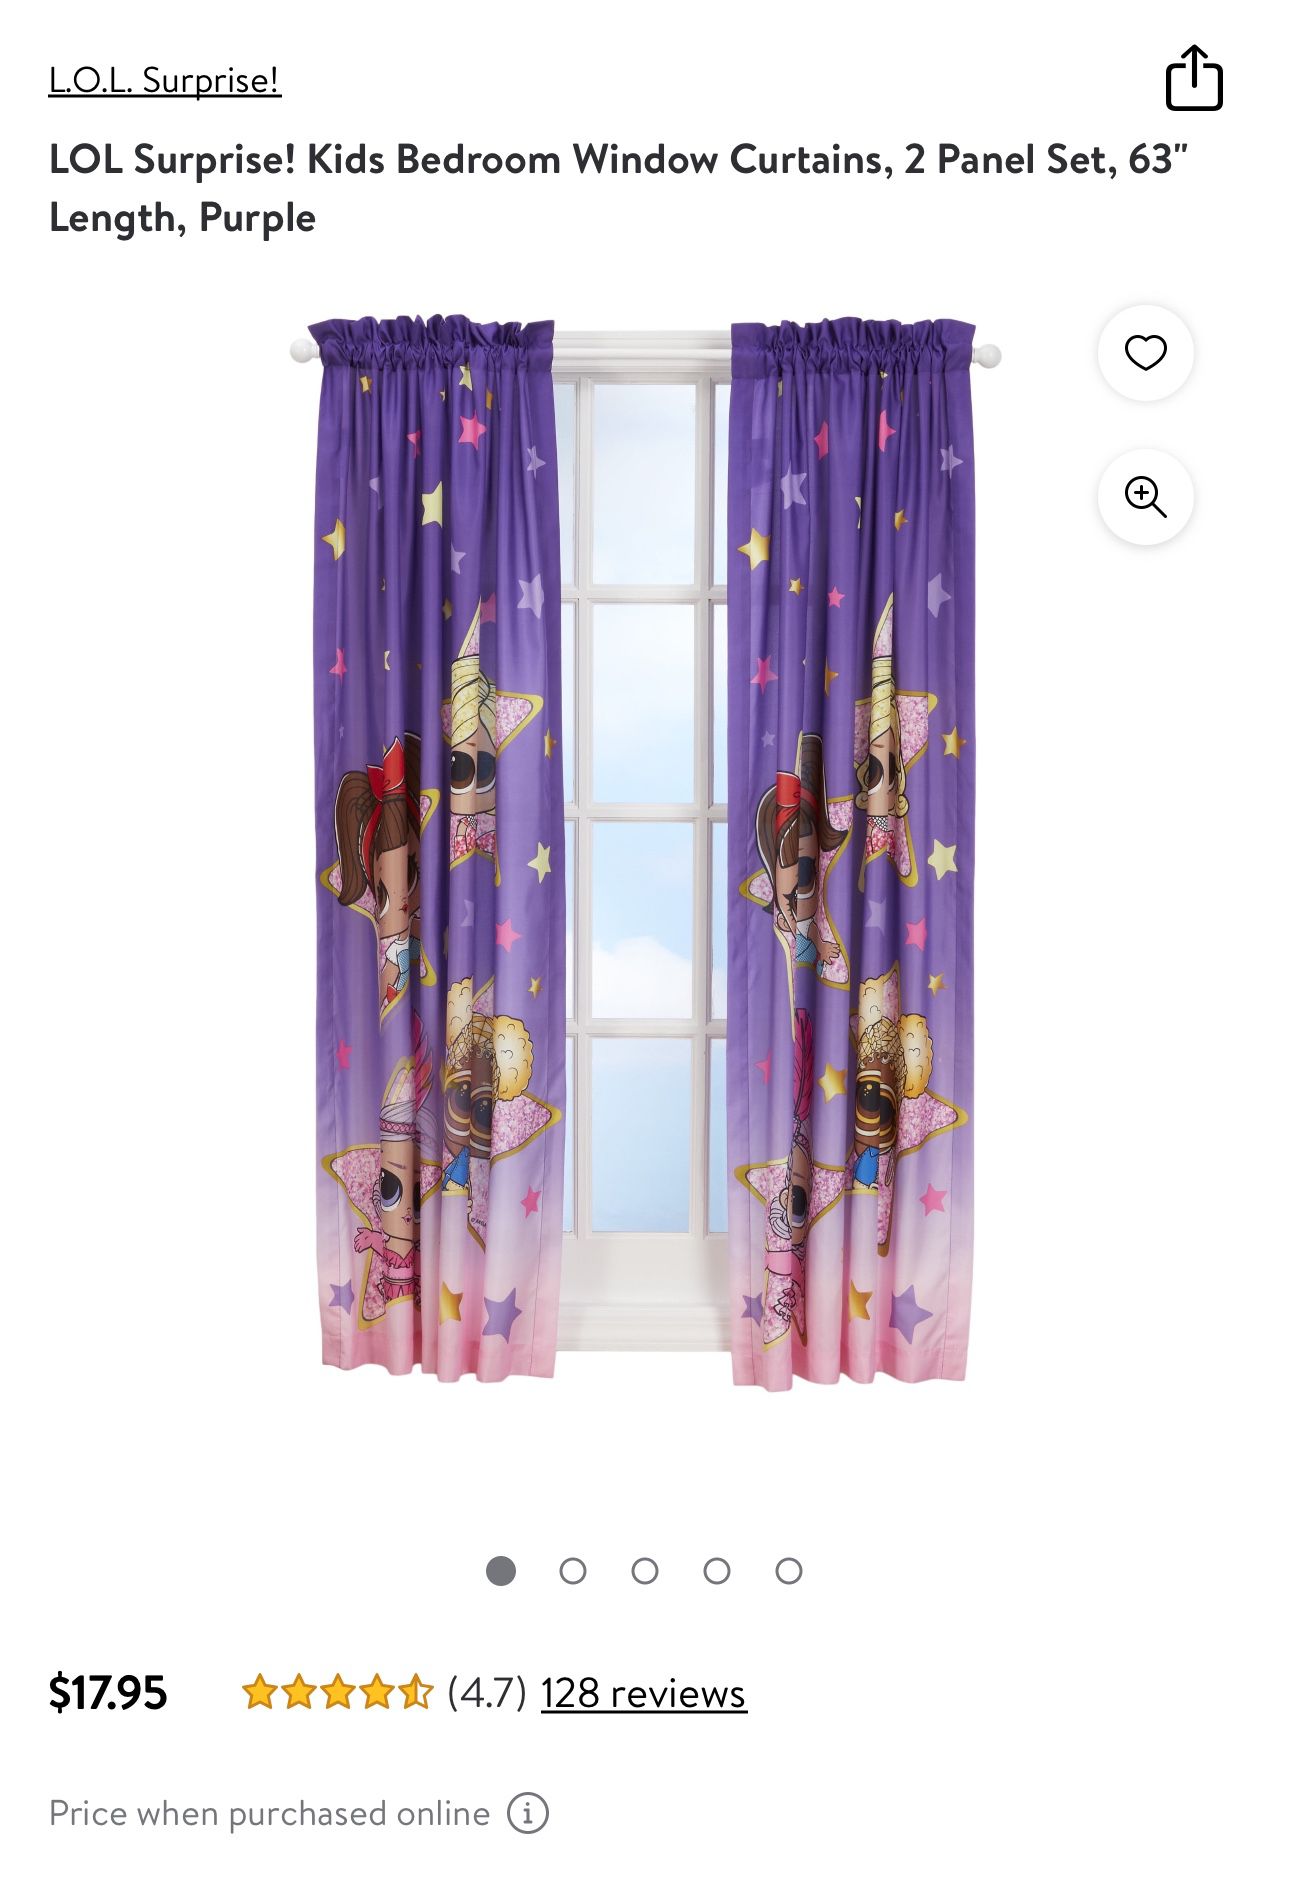 LOL Surprise curtains 